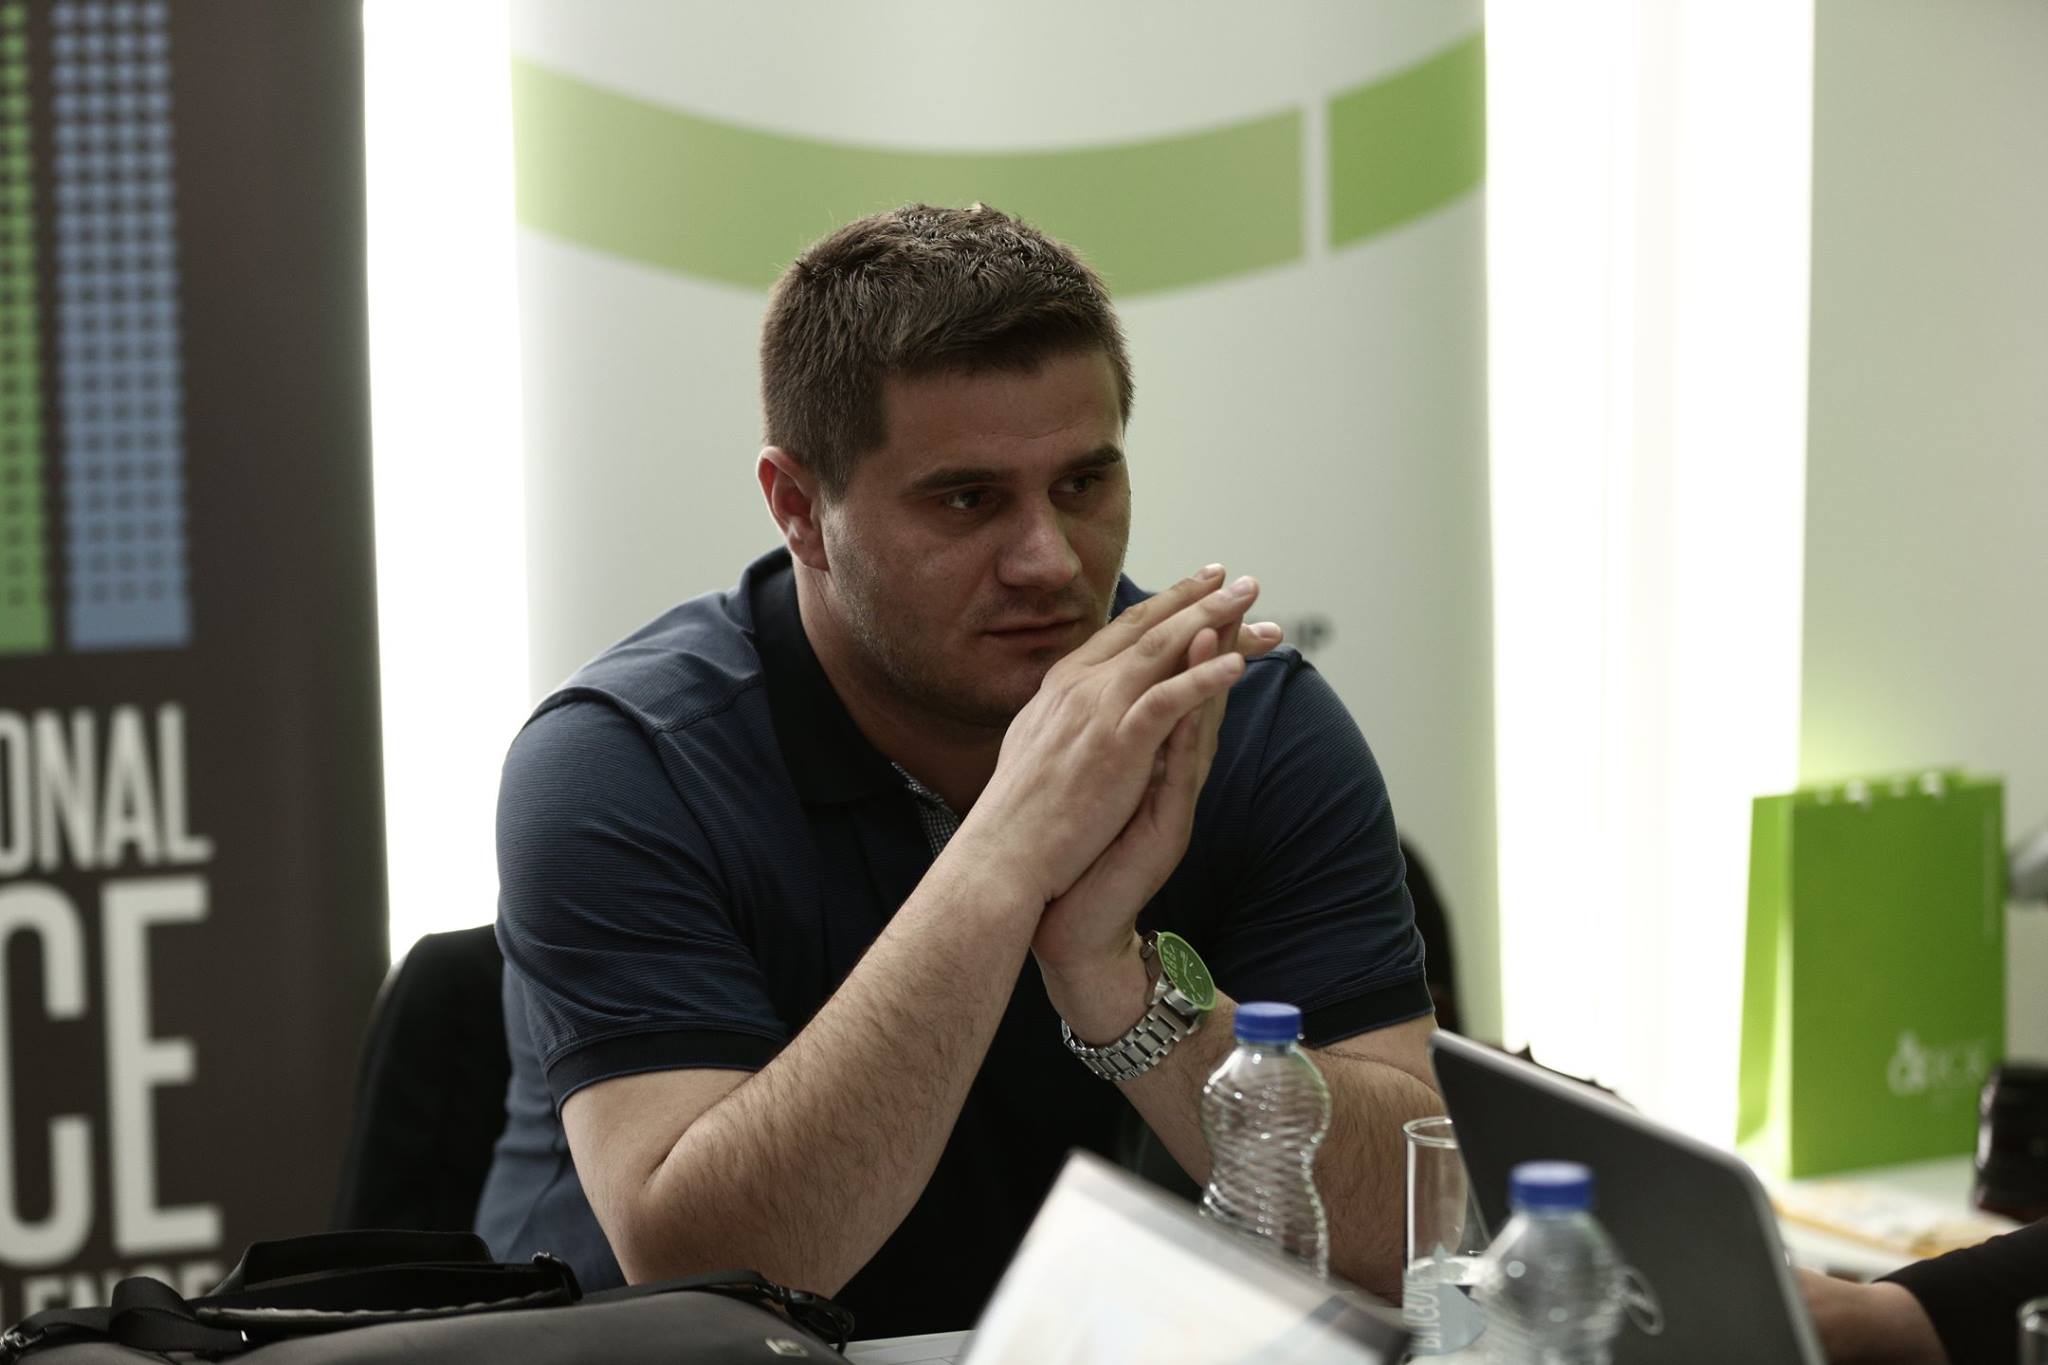 Drejtori i gazetës në Kosovë merret në pyetje për publikimin e kontratës me Pfizer-in